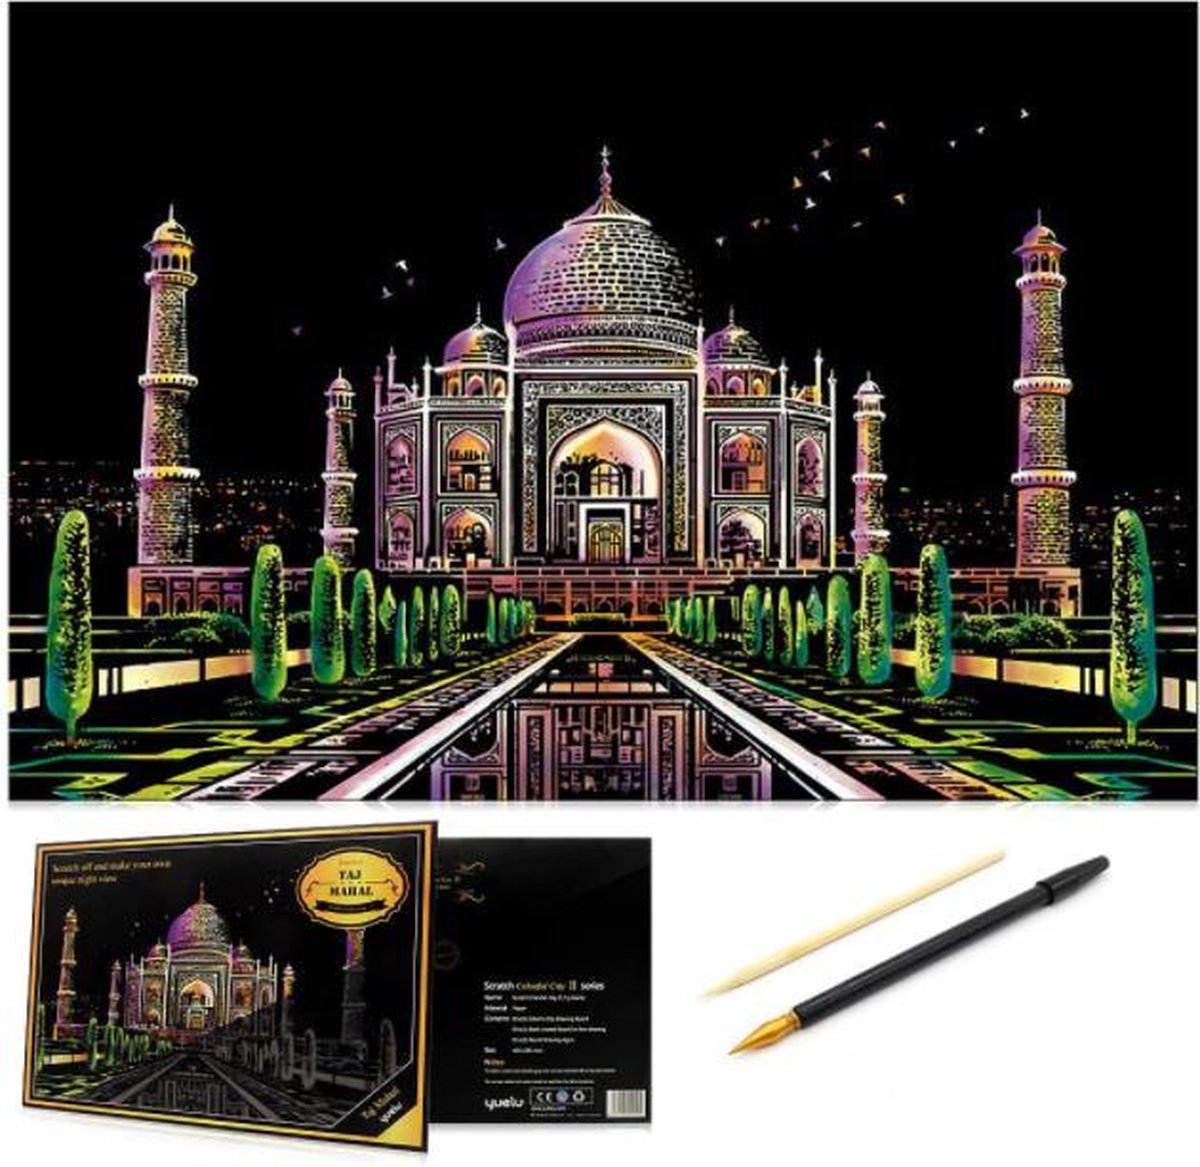 Scratch Art Volwassenen - 41 x 28 cm - Taj Mahal - Kras tekeningen volwassenen pakket - Scratch painting - Kraskaarten - Krasfolie voor volwassenen - Krastekening - Hobby materialen volwassenen – Knutselen voor volwassenen pakket